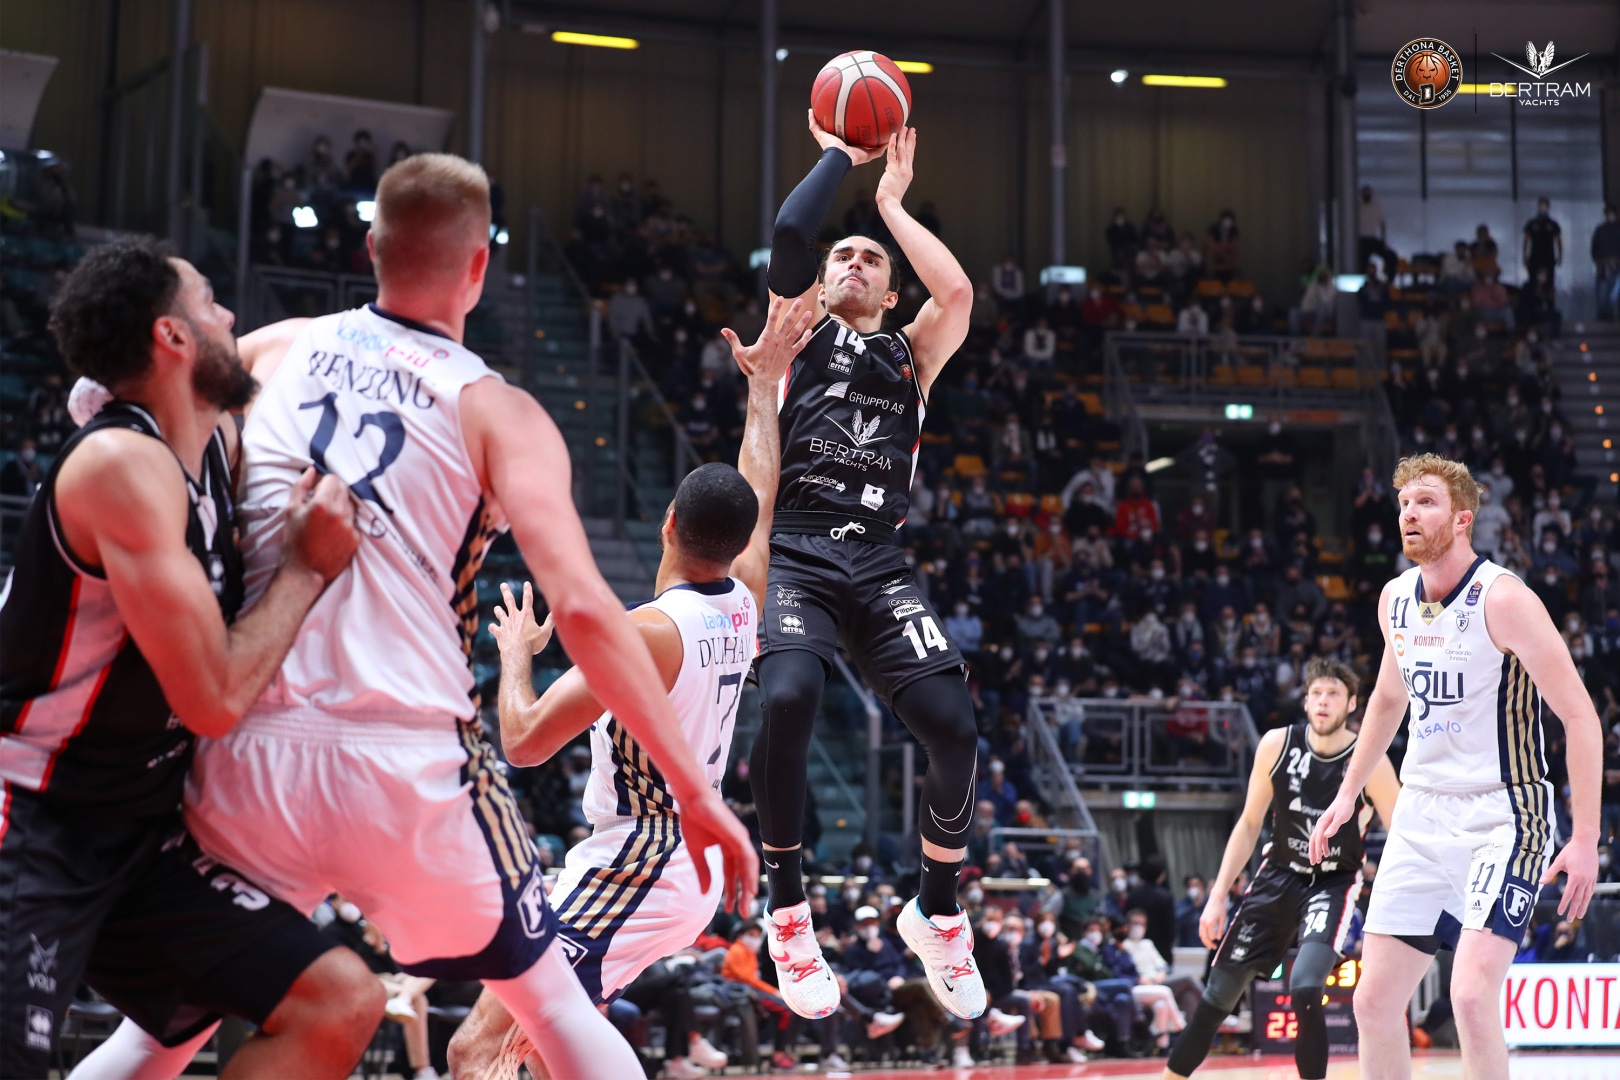 Derthona Basket, beffarda sconfitta all'overtime per mano di Reggio Emilia